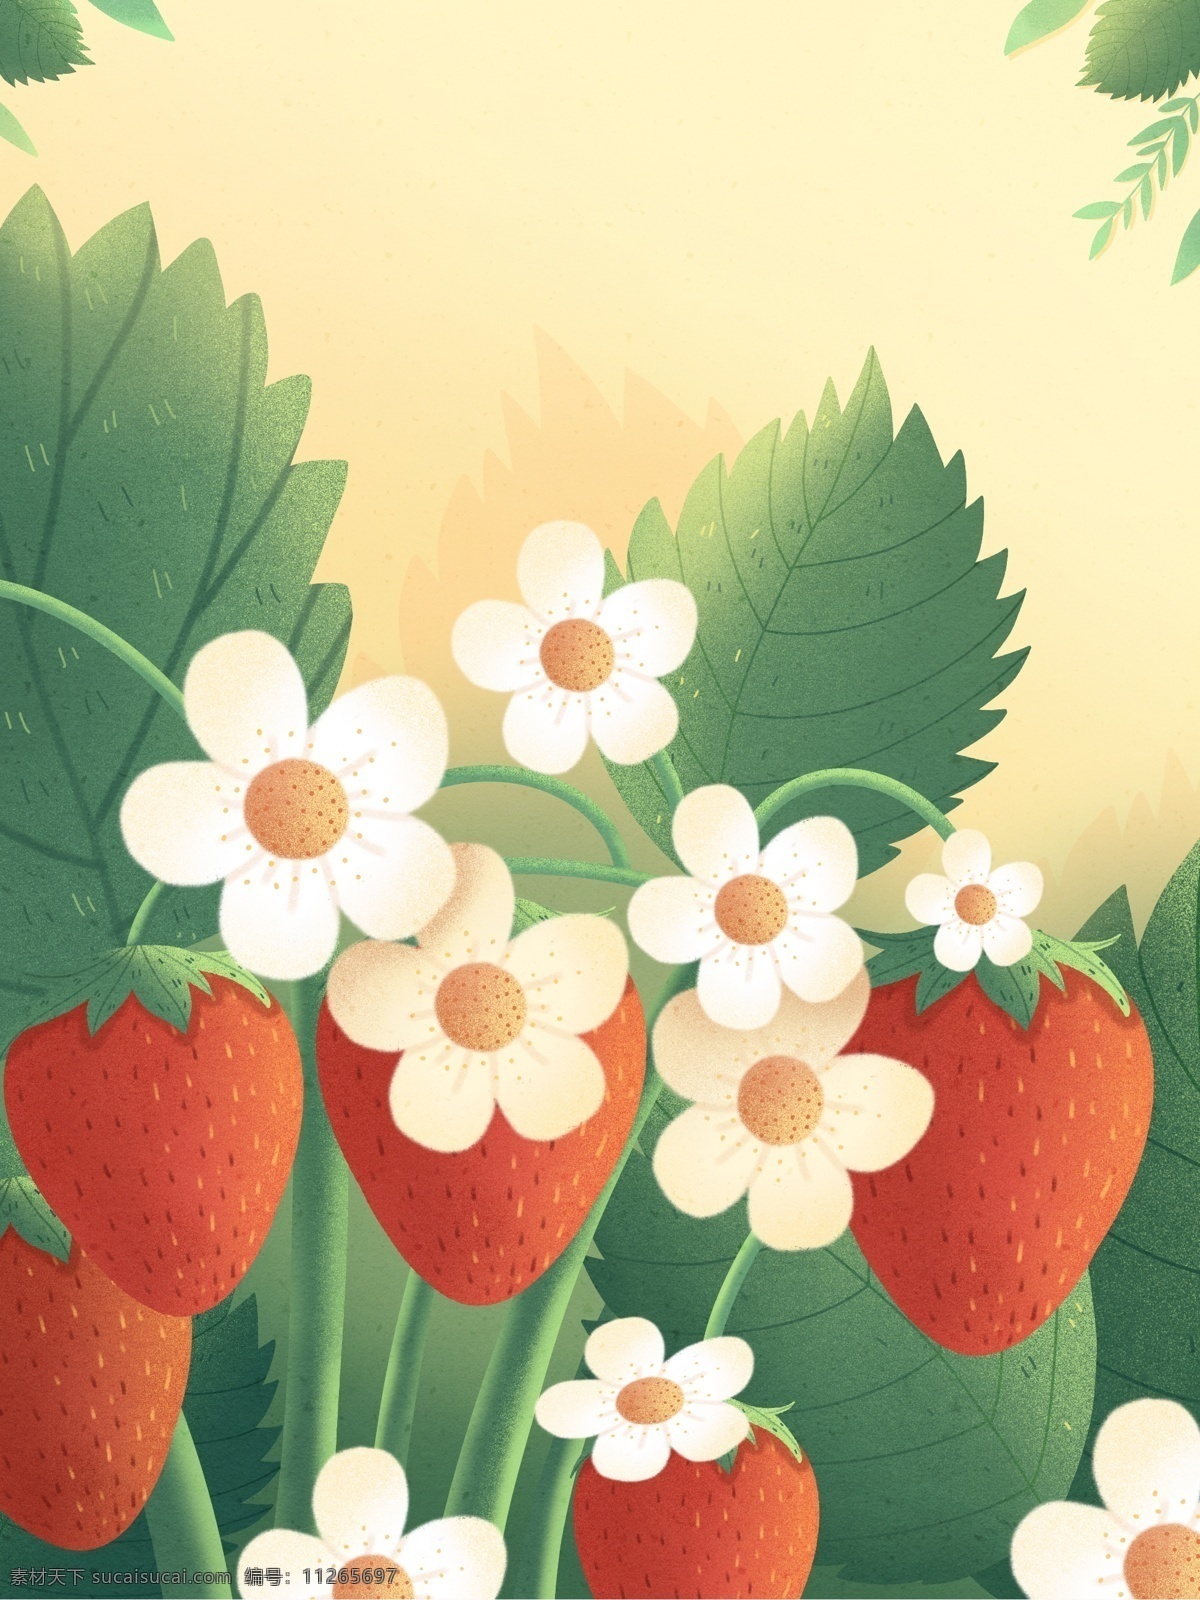 清新 草莓 卡通 背景 花朵 水果背景 食物 背景图 创意 草莓背景 水果 草莓花 背景设计 特邀背景 促销背景 背景展板图